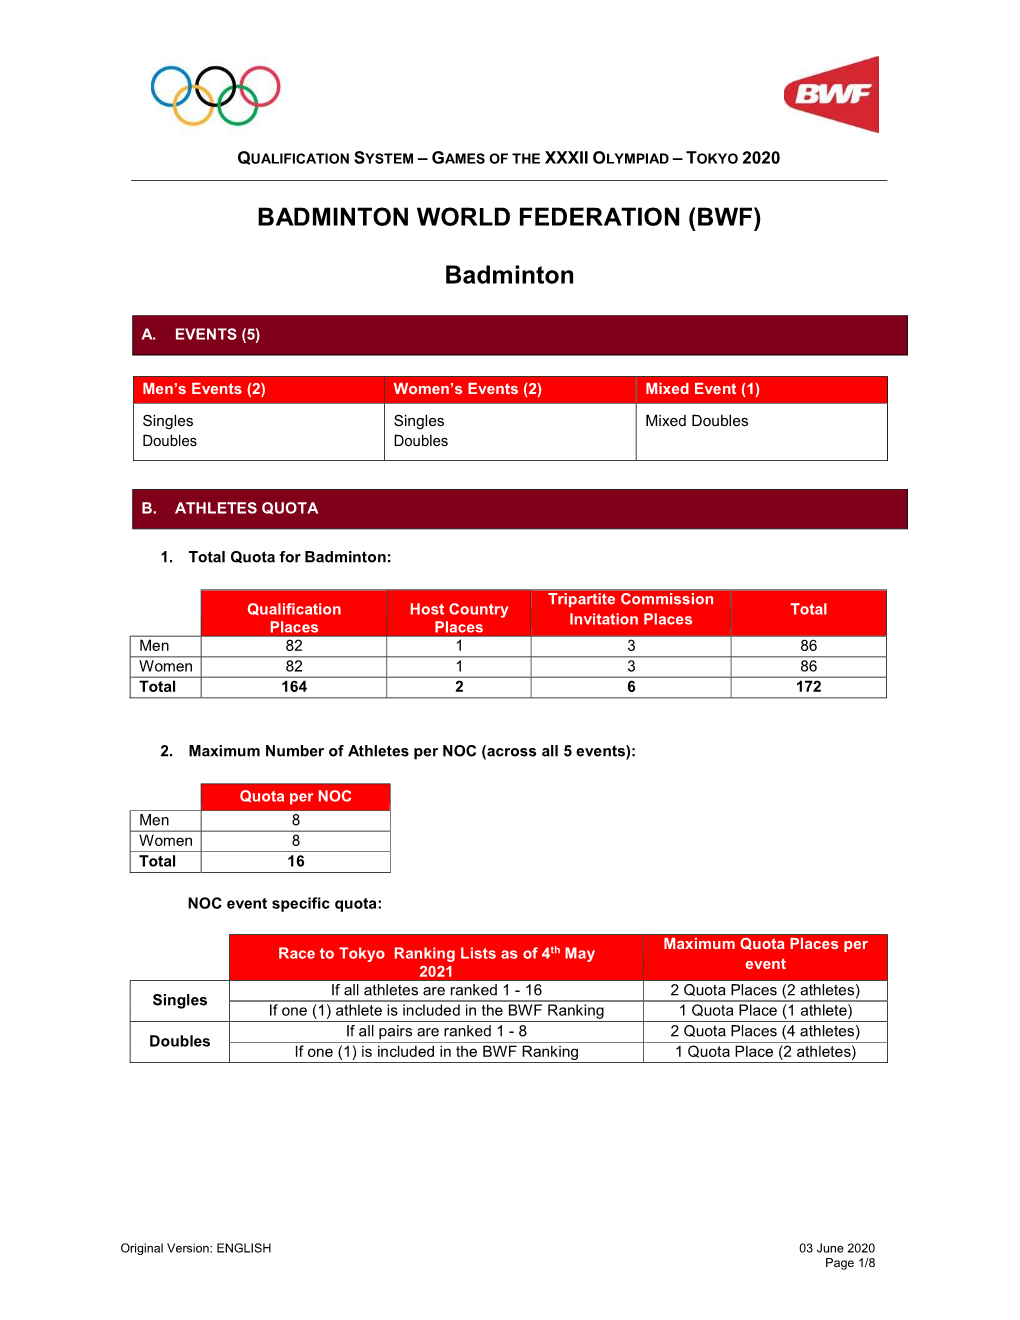 BADMINTON WORLD FEDERATION (BWF) Badminton